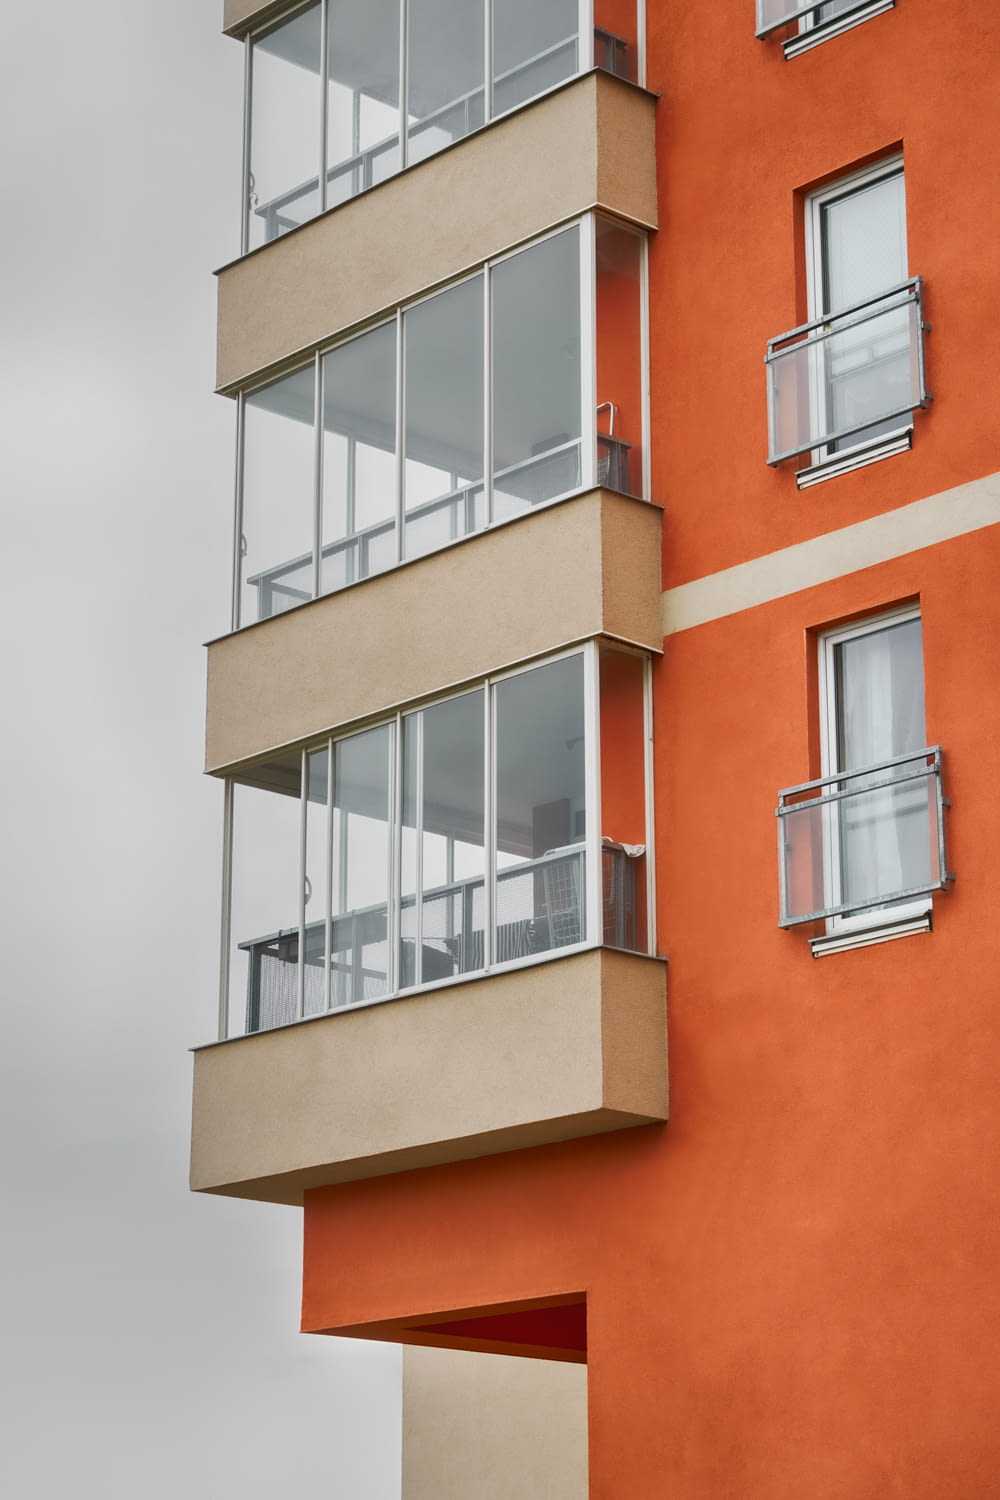 Ein hohes orangefarbenes Gebäude mit Balkonen und Fenstern